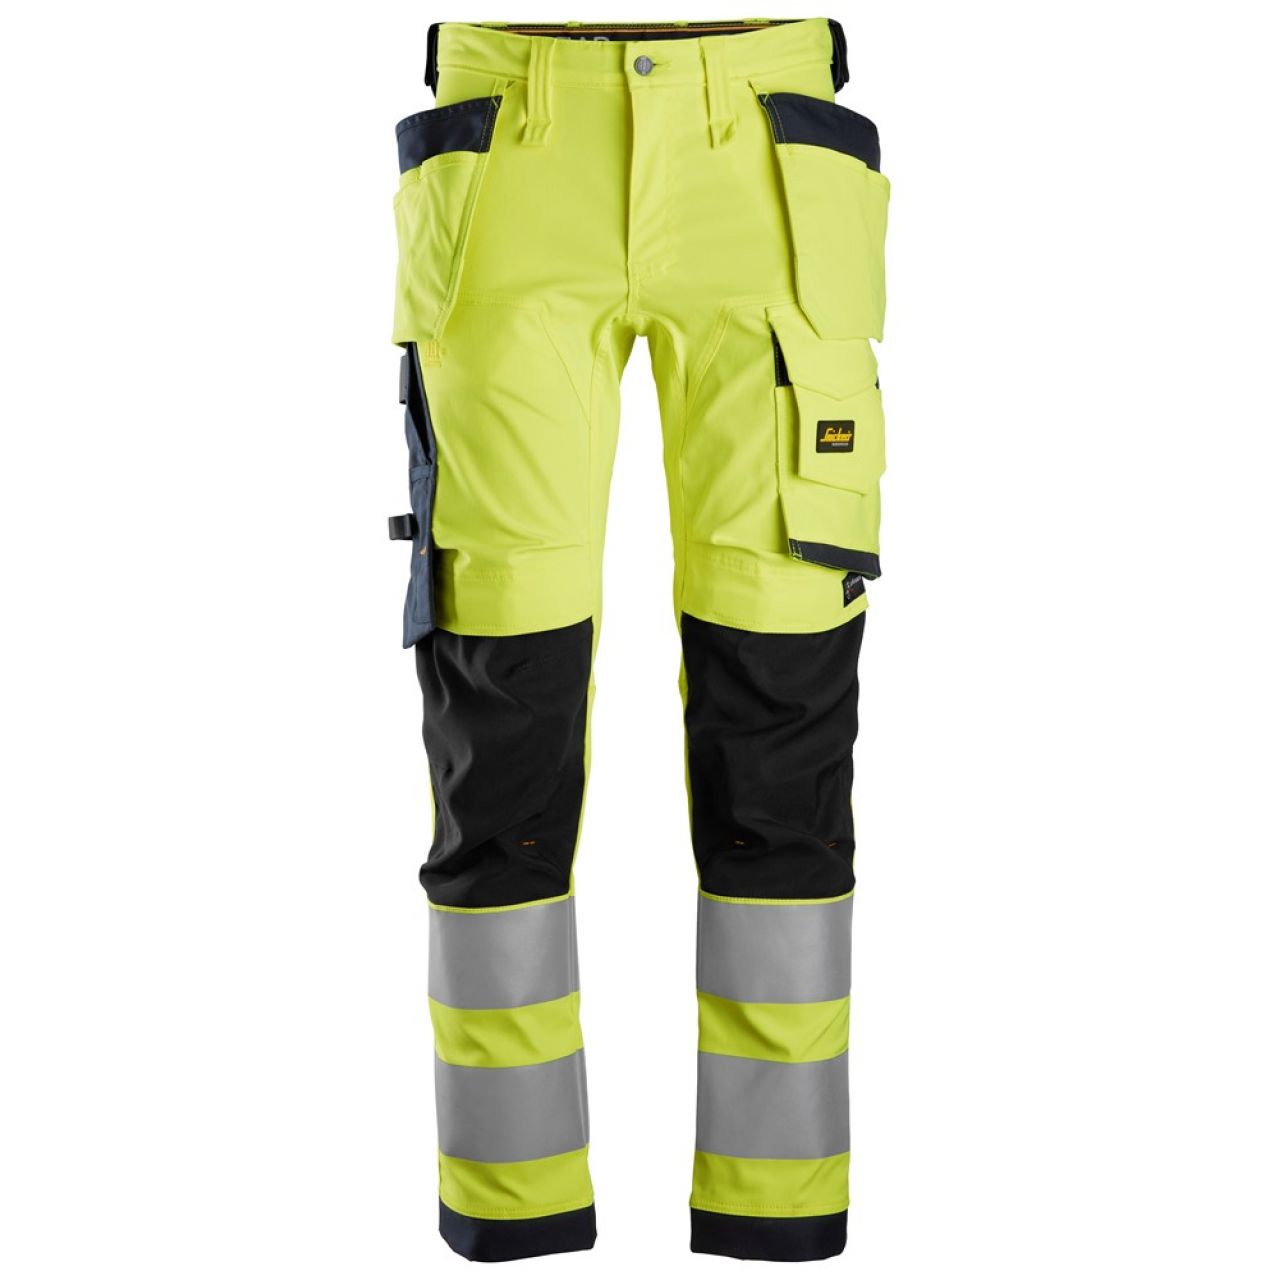 6243 Pantalones largos de trabajo elásticos de alta visibilidad clase 2 con bolsillos flotantes amarillo-azul marino talla 156